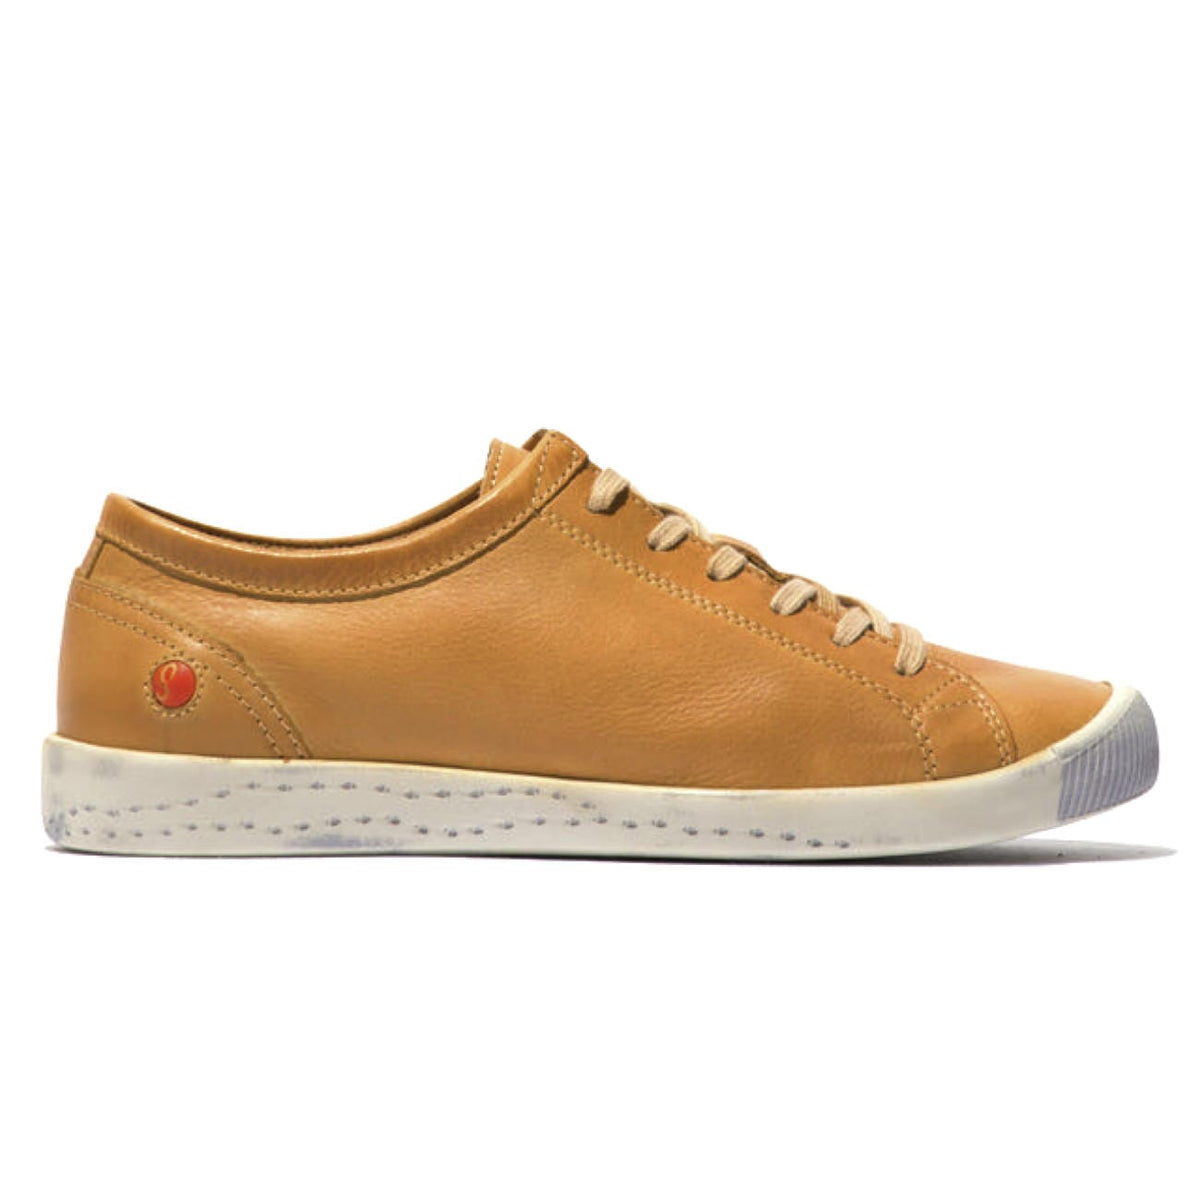 Softinos, Isla154, Laceup Shoe, Washed Leather, Warm Orange Shoes Softinos 